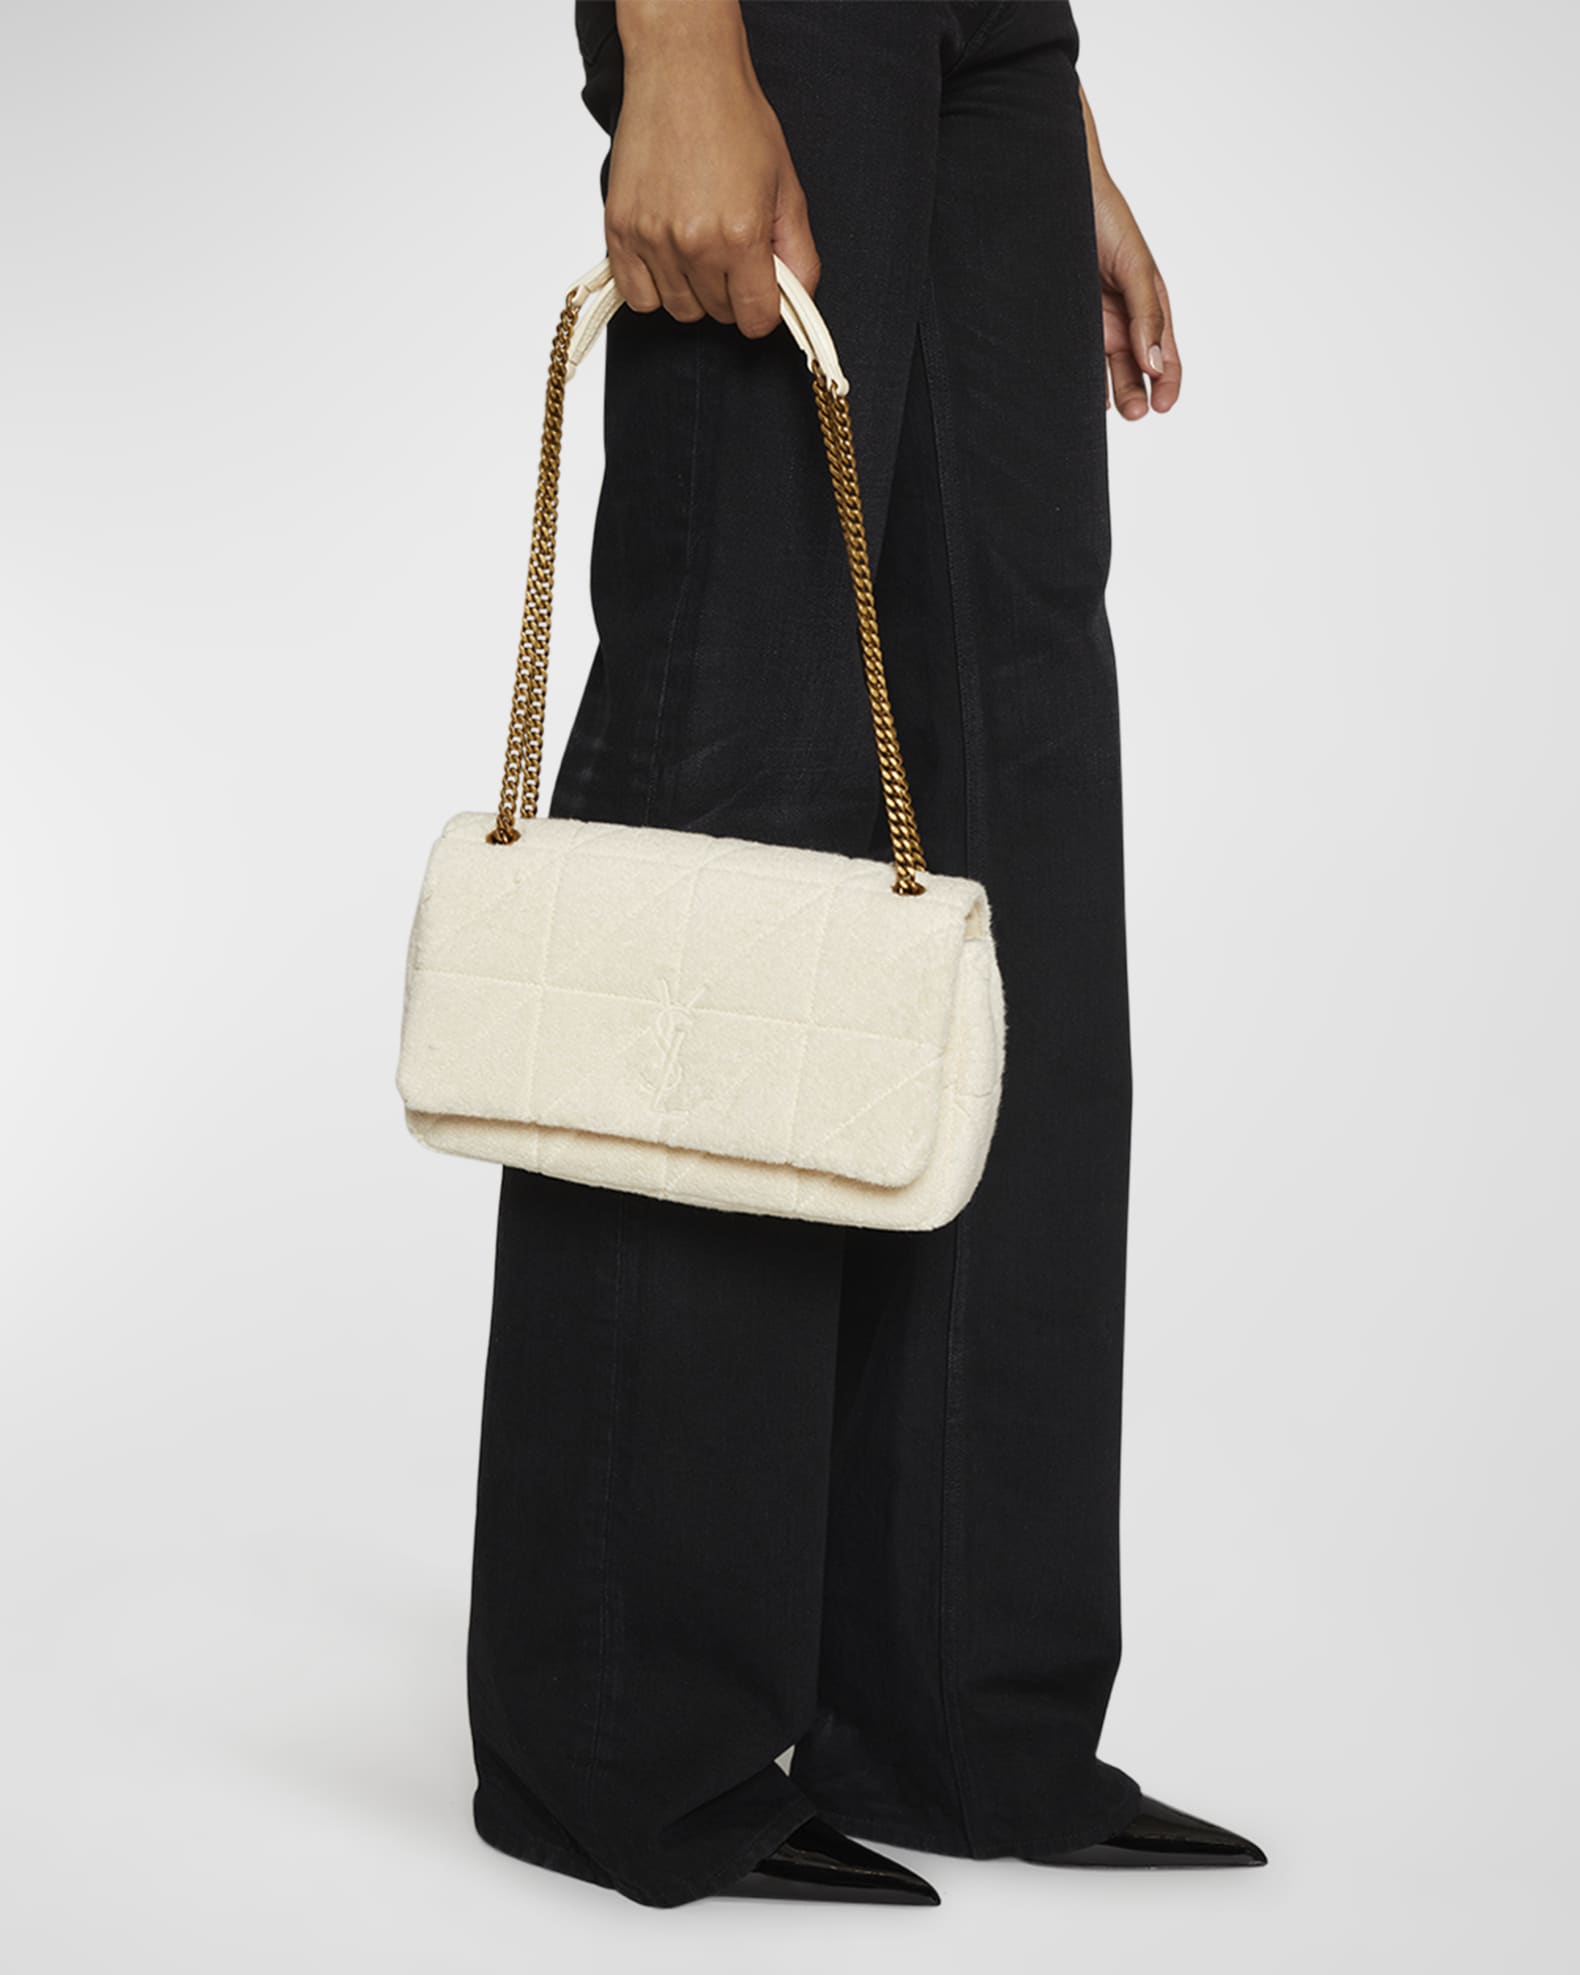 Saint Laurent Jamie Mini Ysl Quilted Wool Crossbody Bag In Black